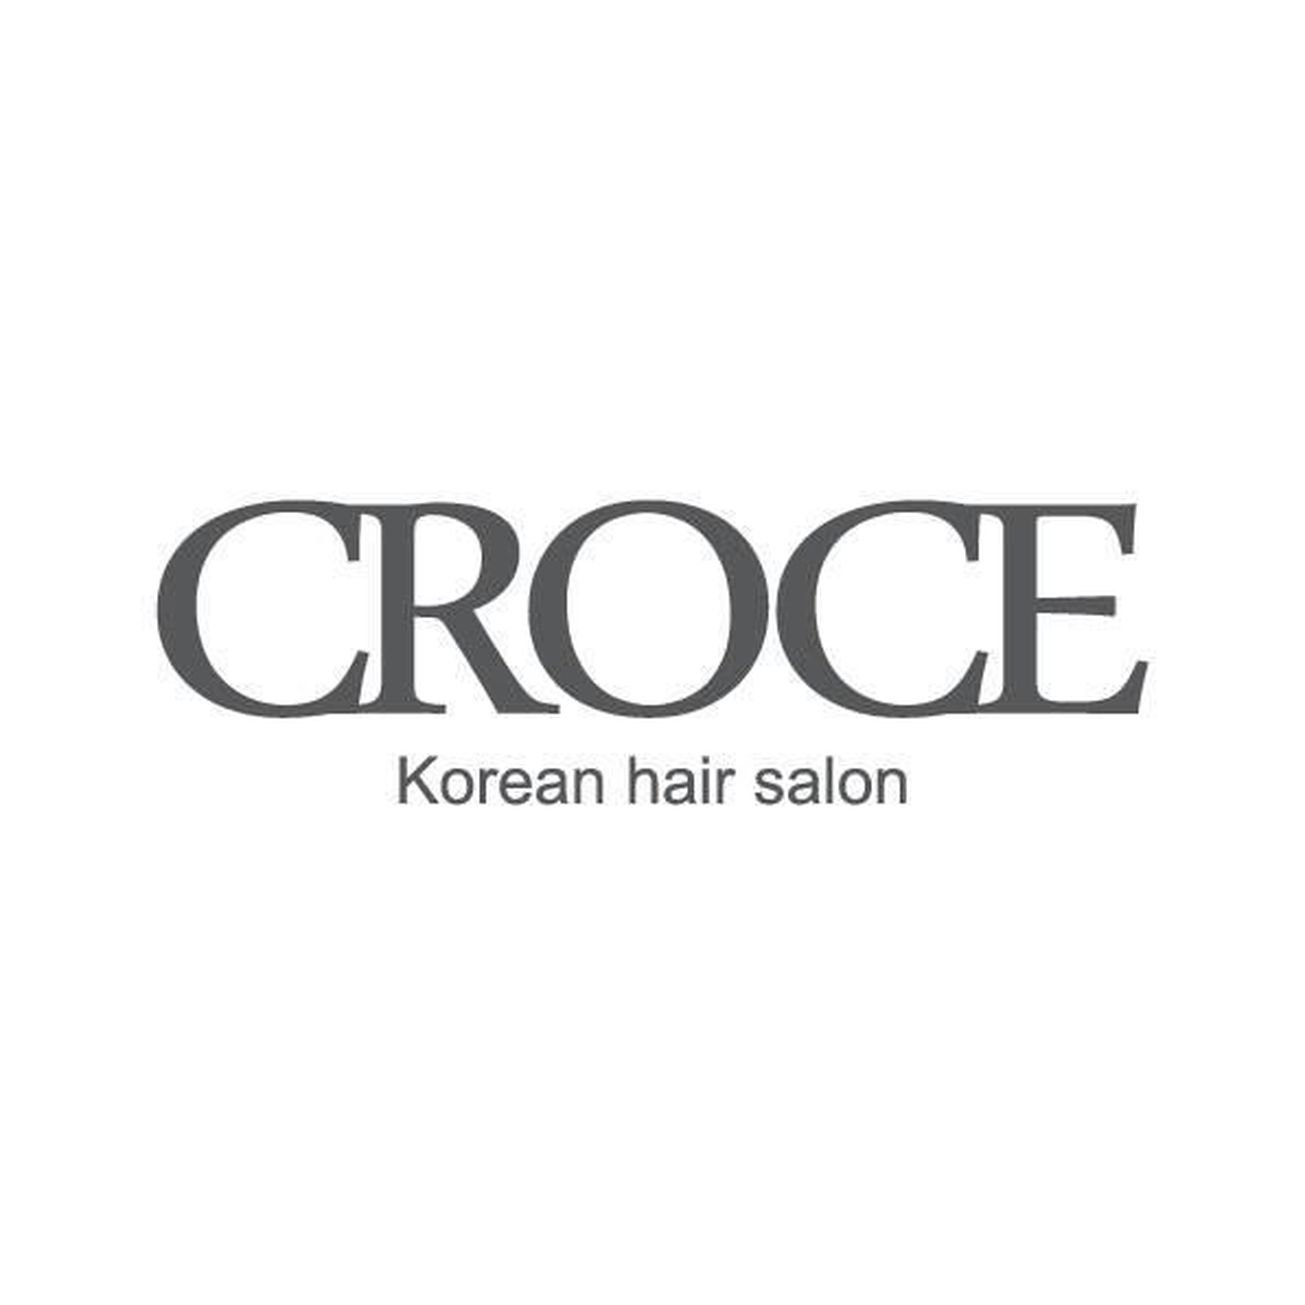 Croce Korean Hair Salon 0 gallaries